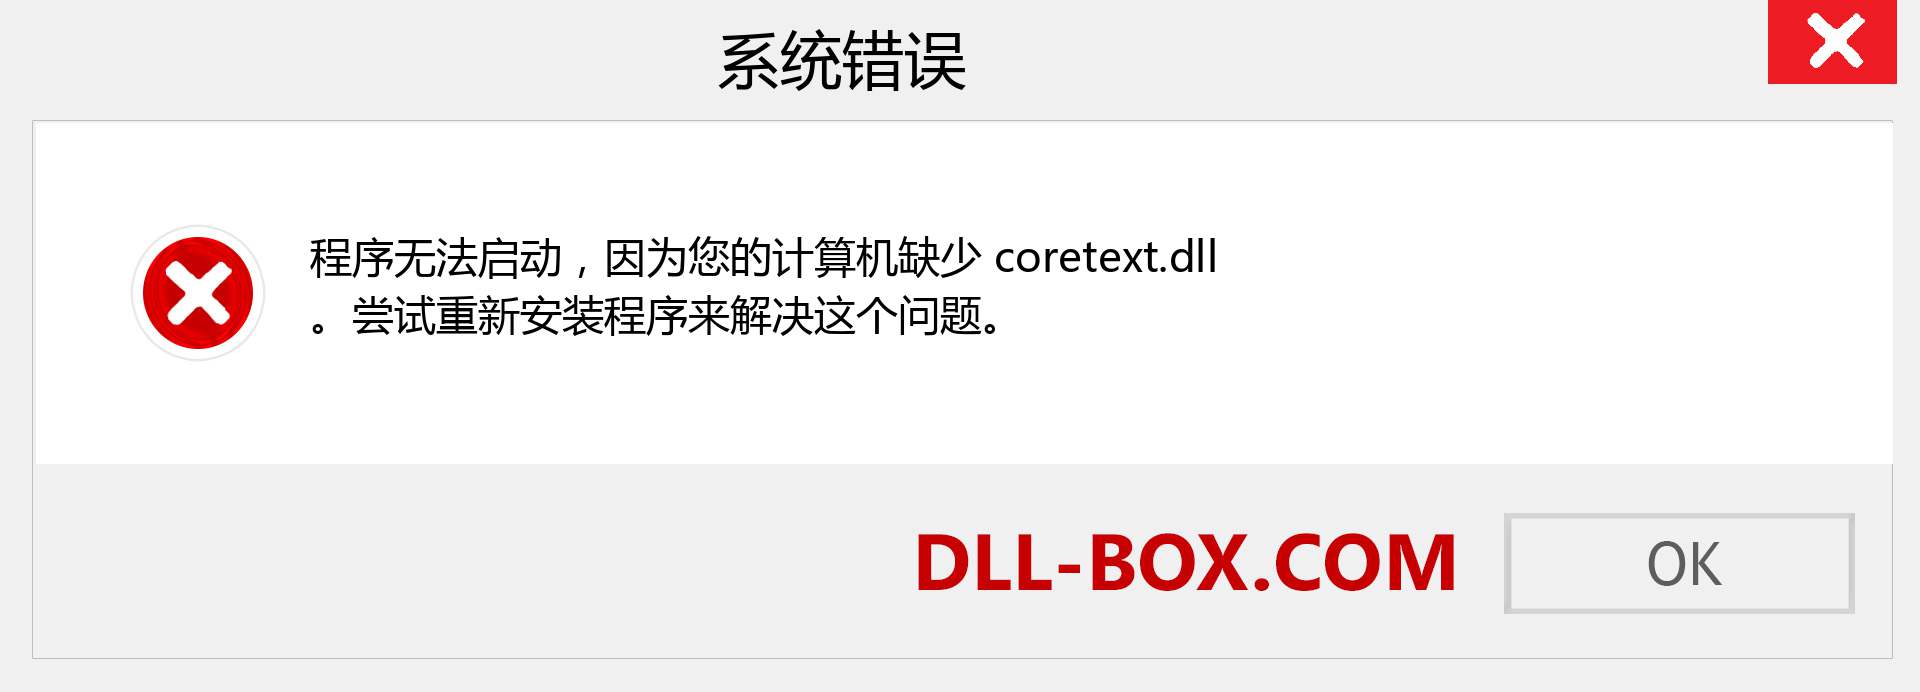 coretext.dll 文件丢失？。 适用于 Windows 7、8、10 的下载 - 修复 Windows、照片、图像上的 coretext dll 丢失错误